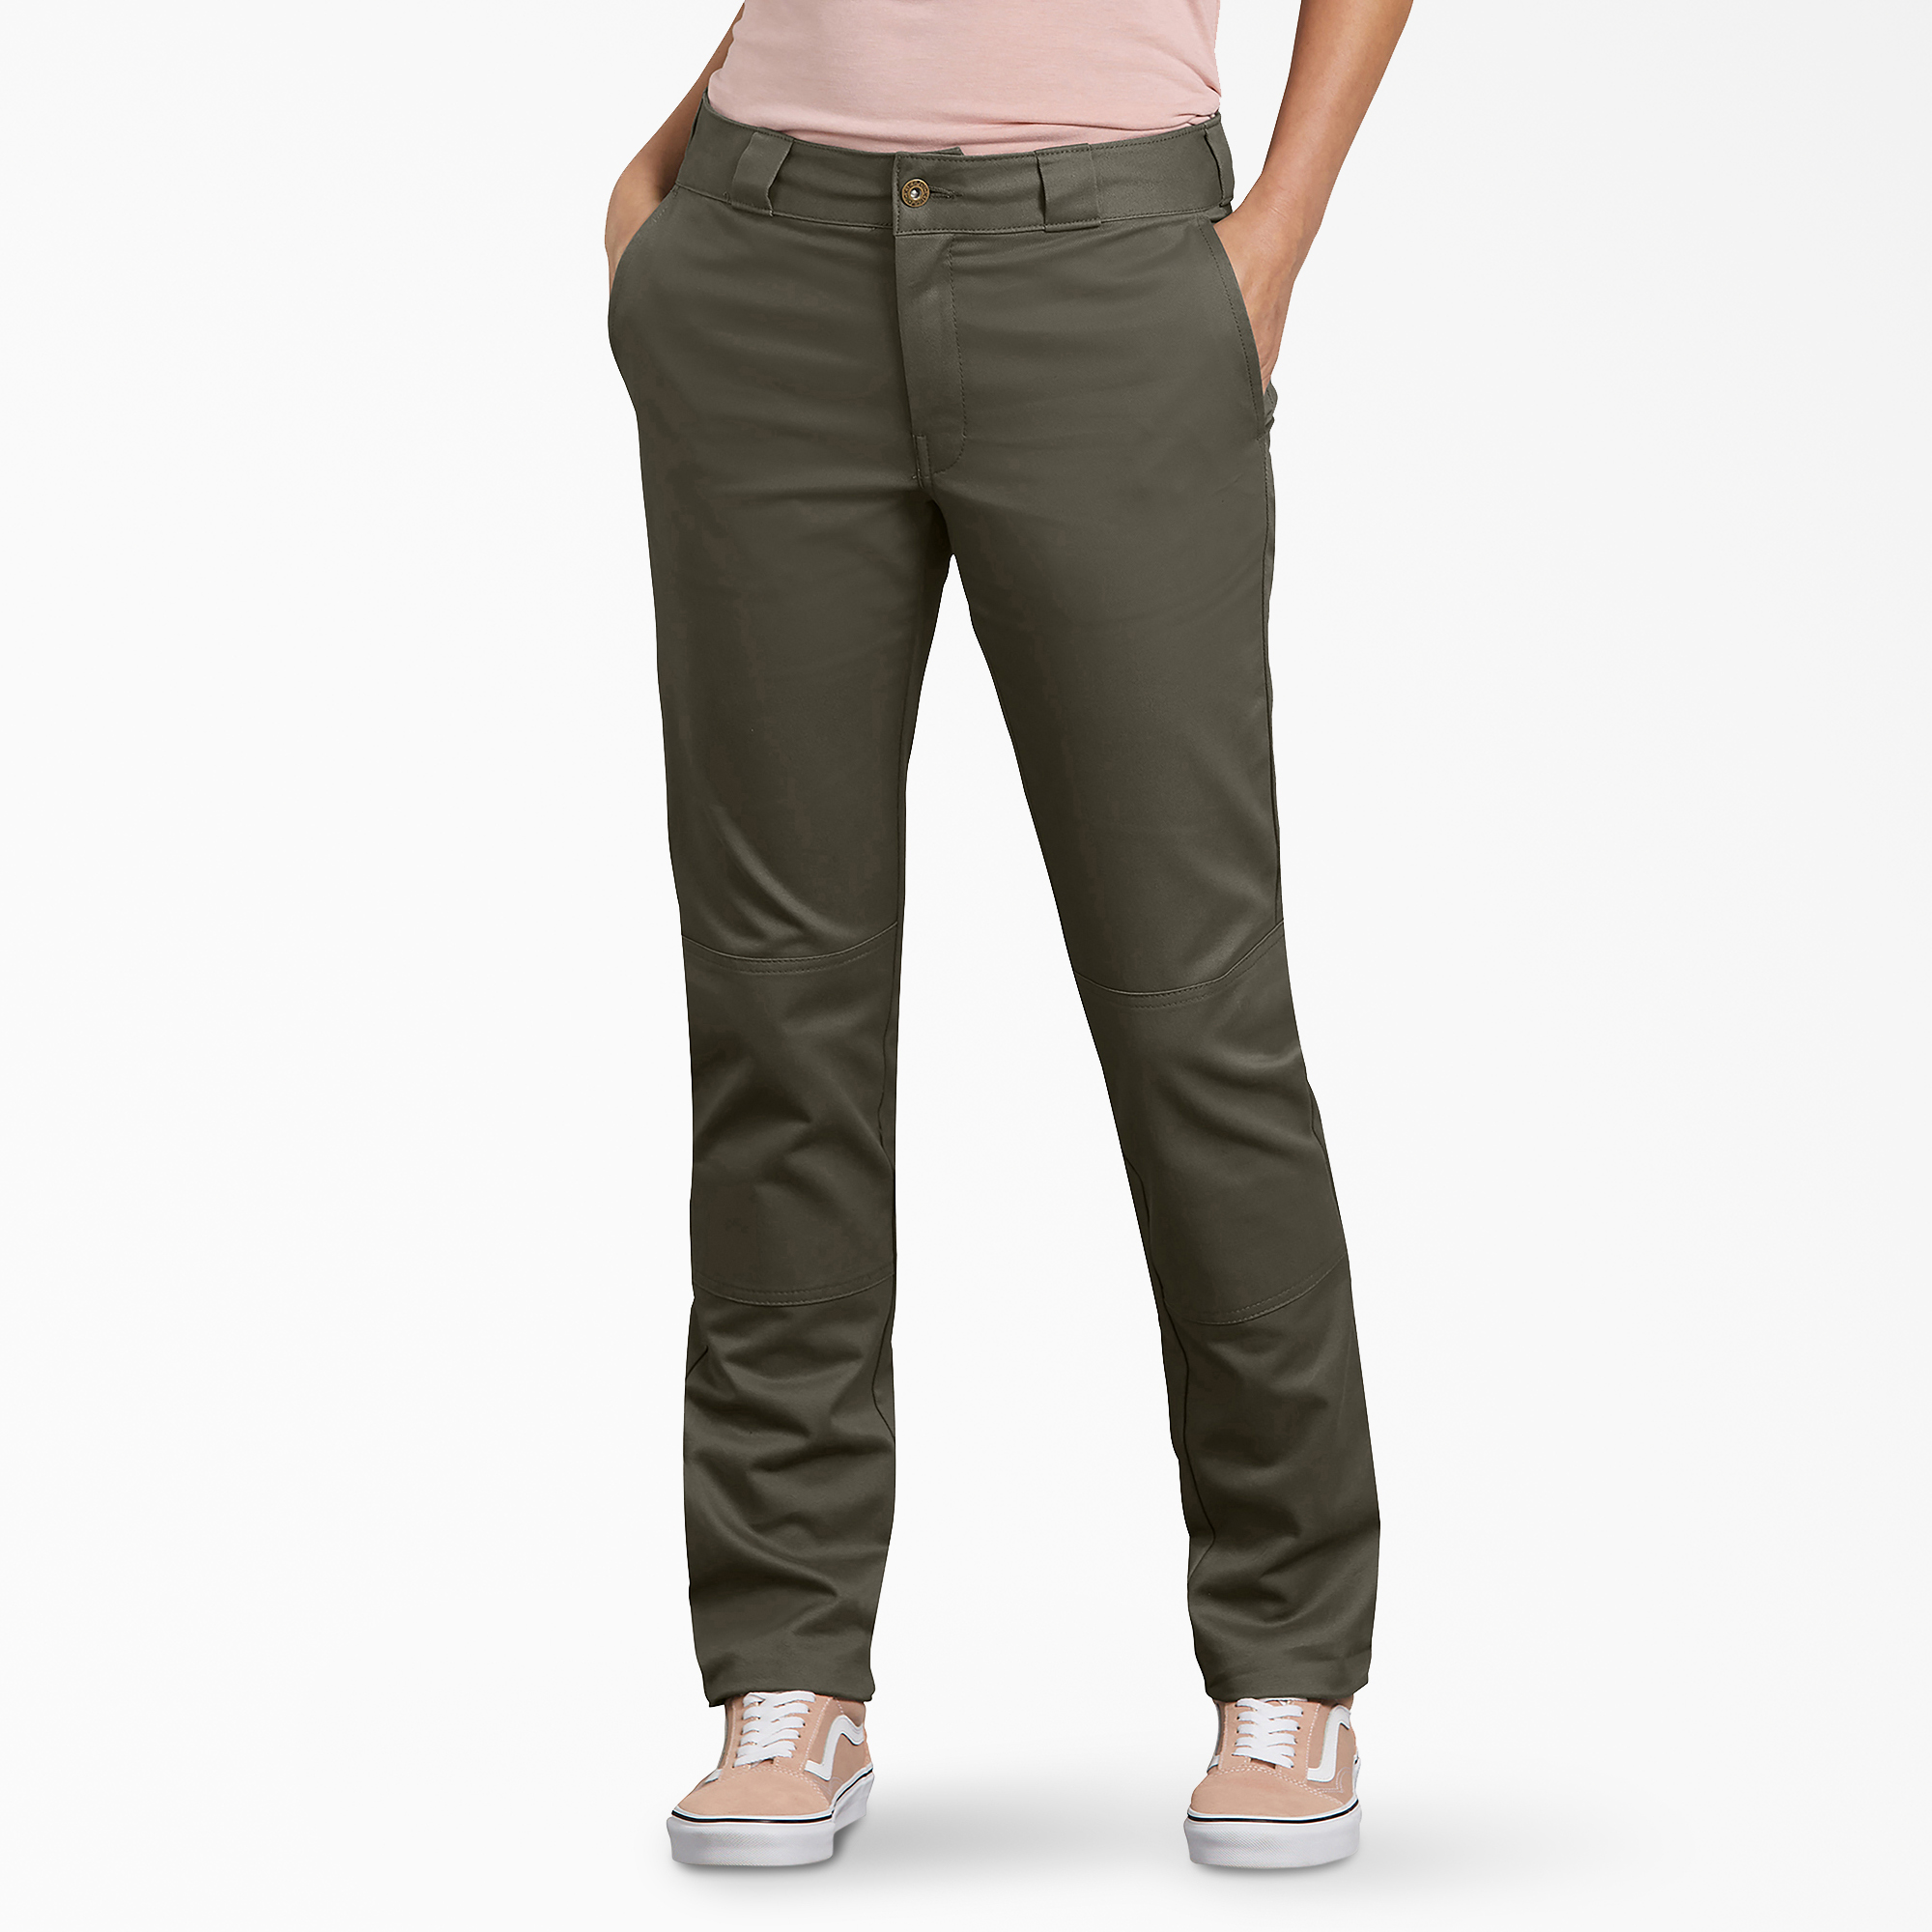 Women's Slim Fit Double Knee Pants - Grape Leaf (GE)